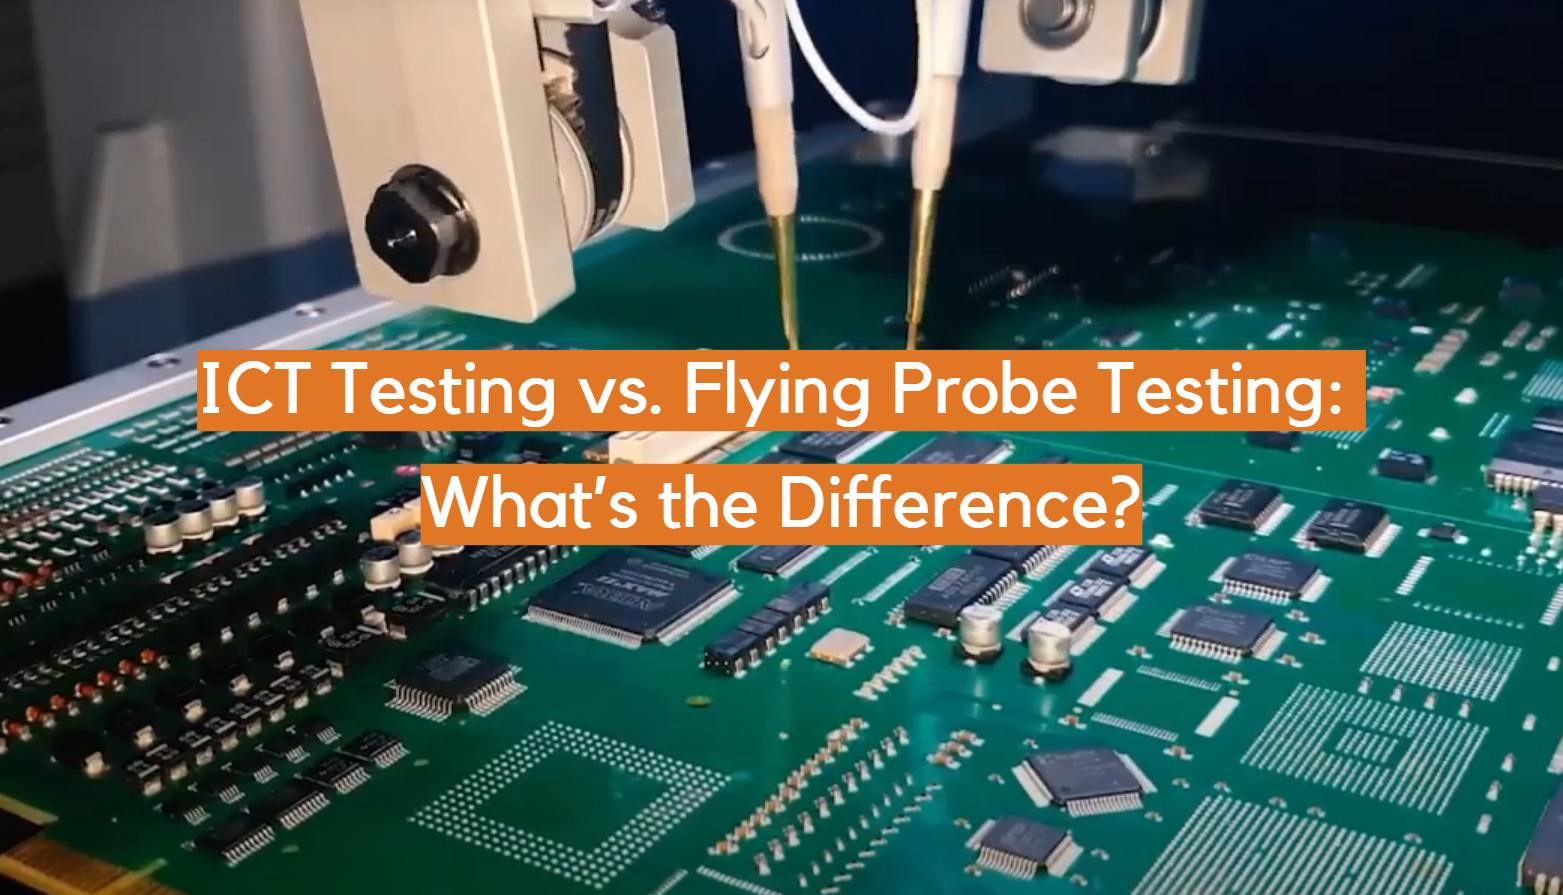 Pruebas de TIC frente a pruebas de sonda voladora: ¿cuál es la diferencia?